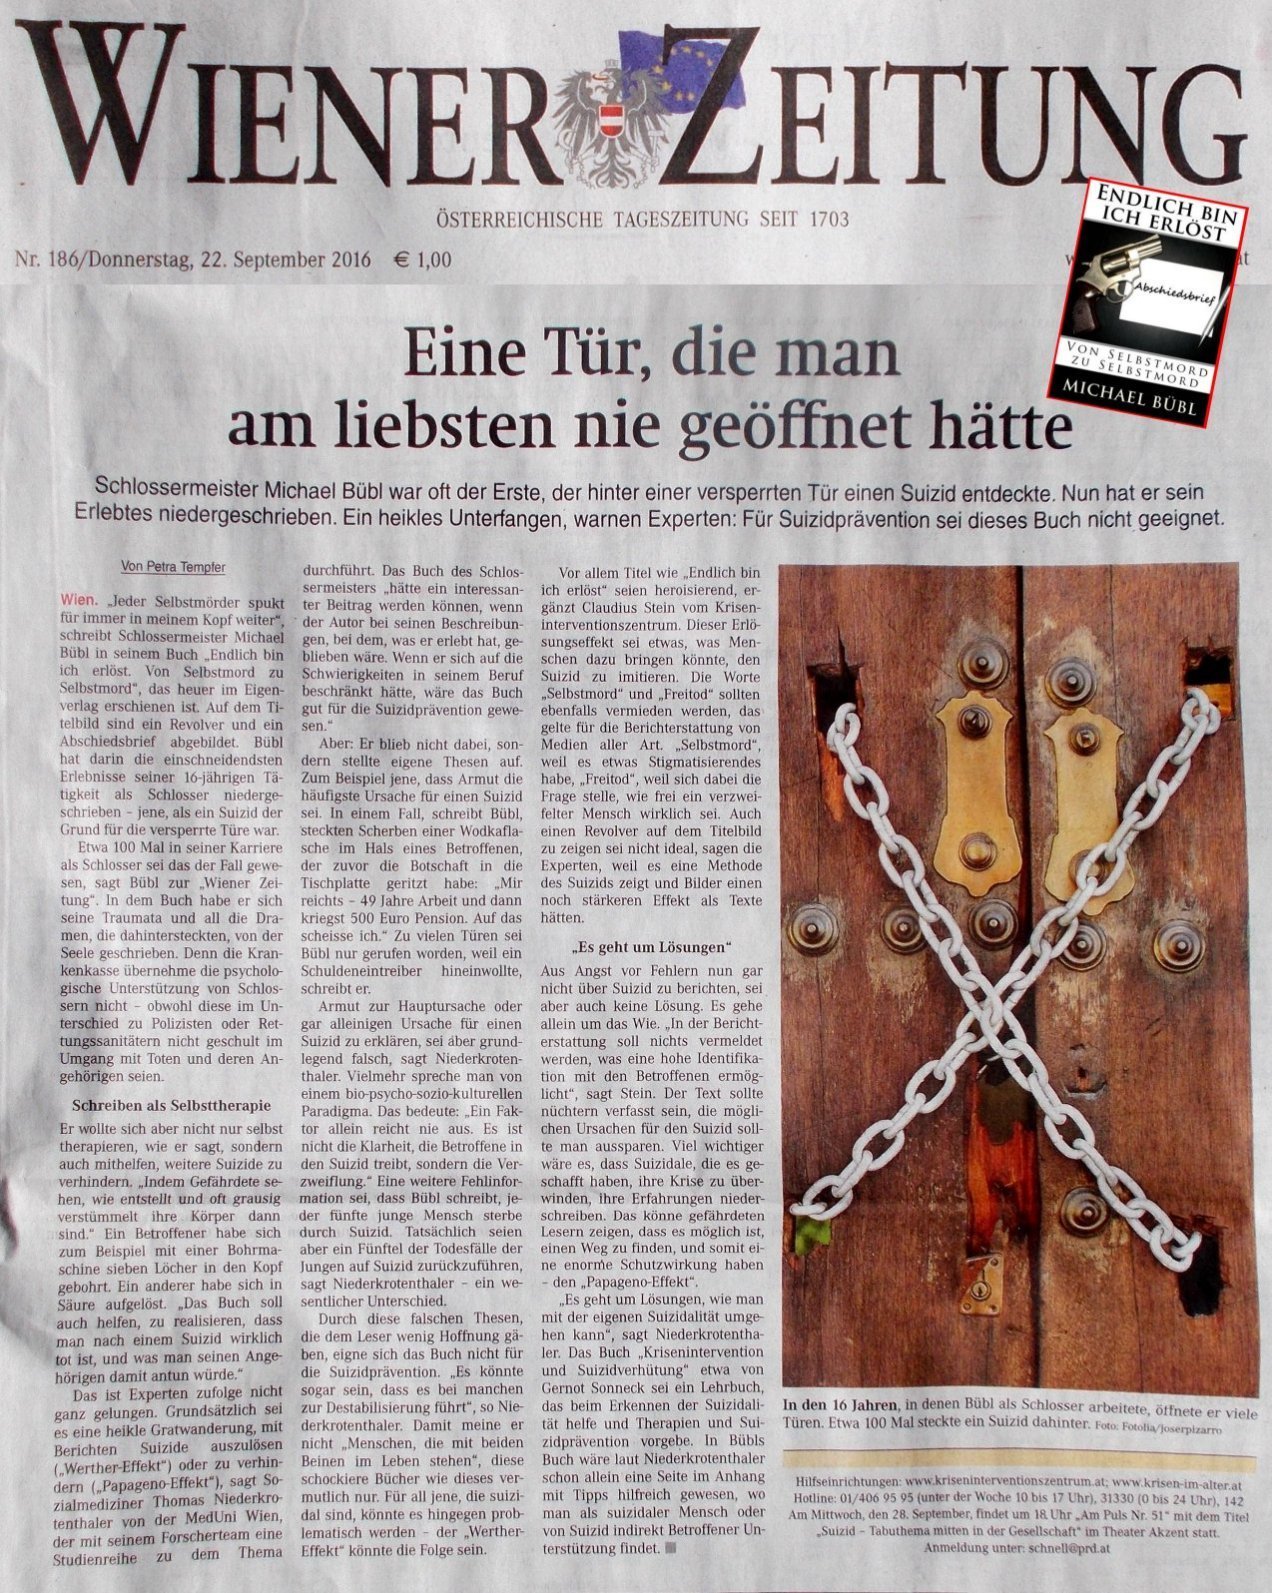 Wienerzeitung, Selbstmord, Suizid